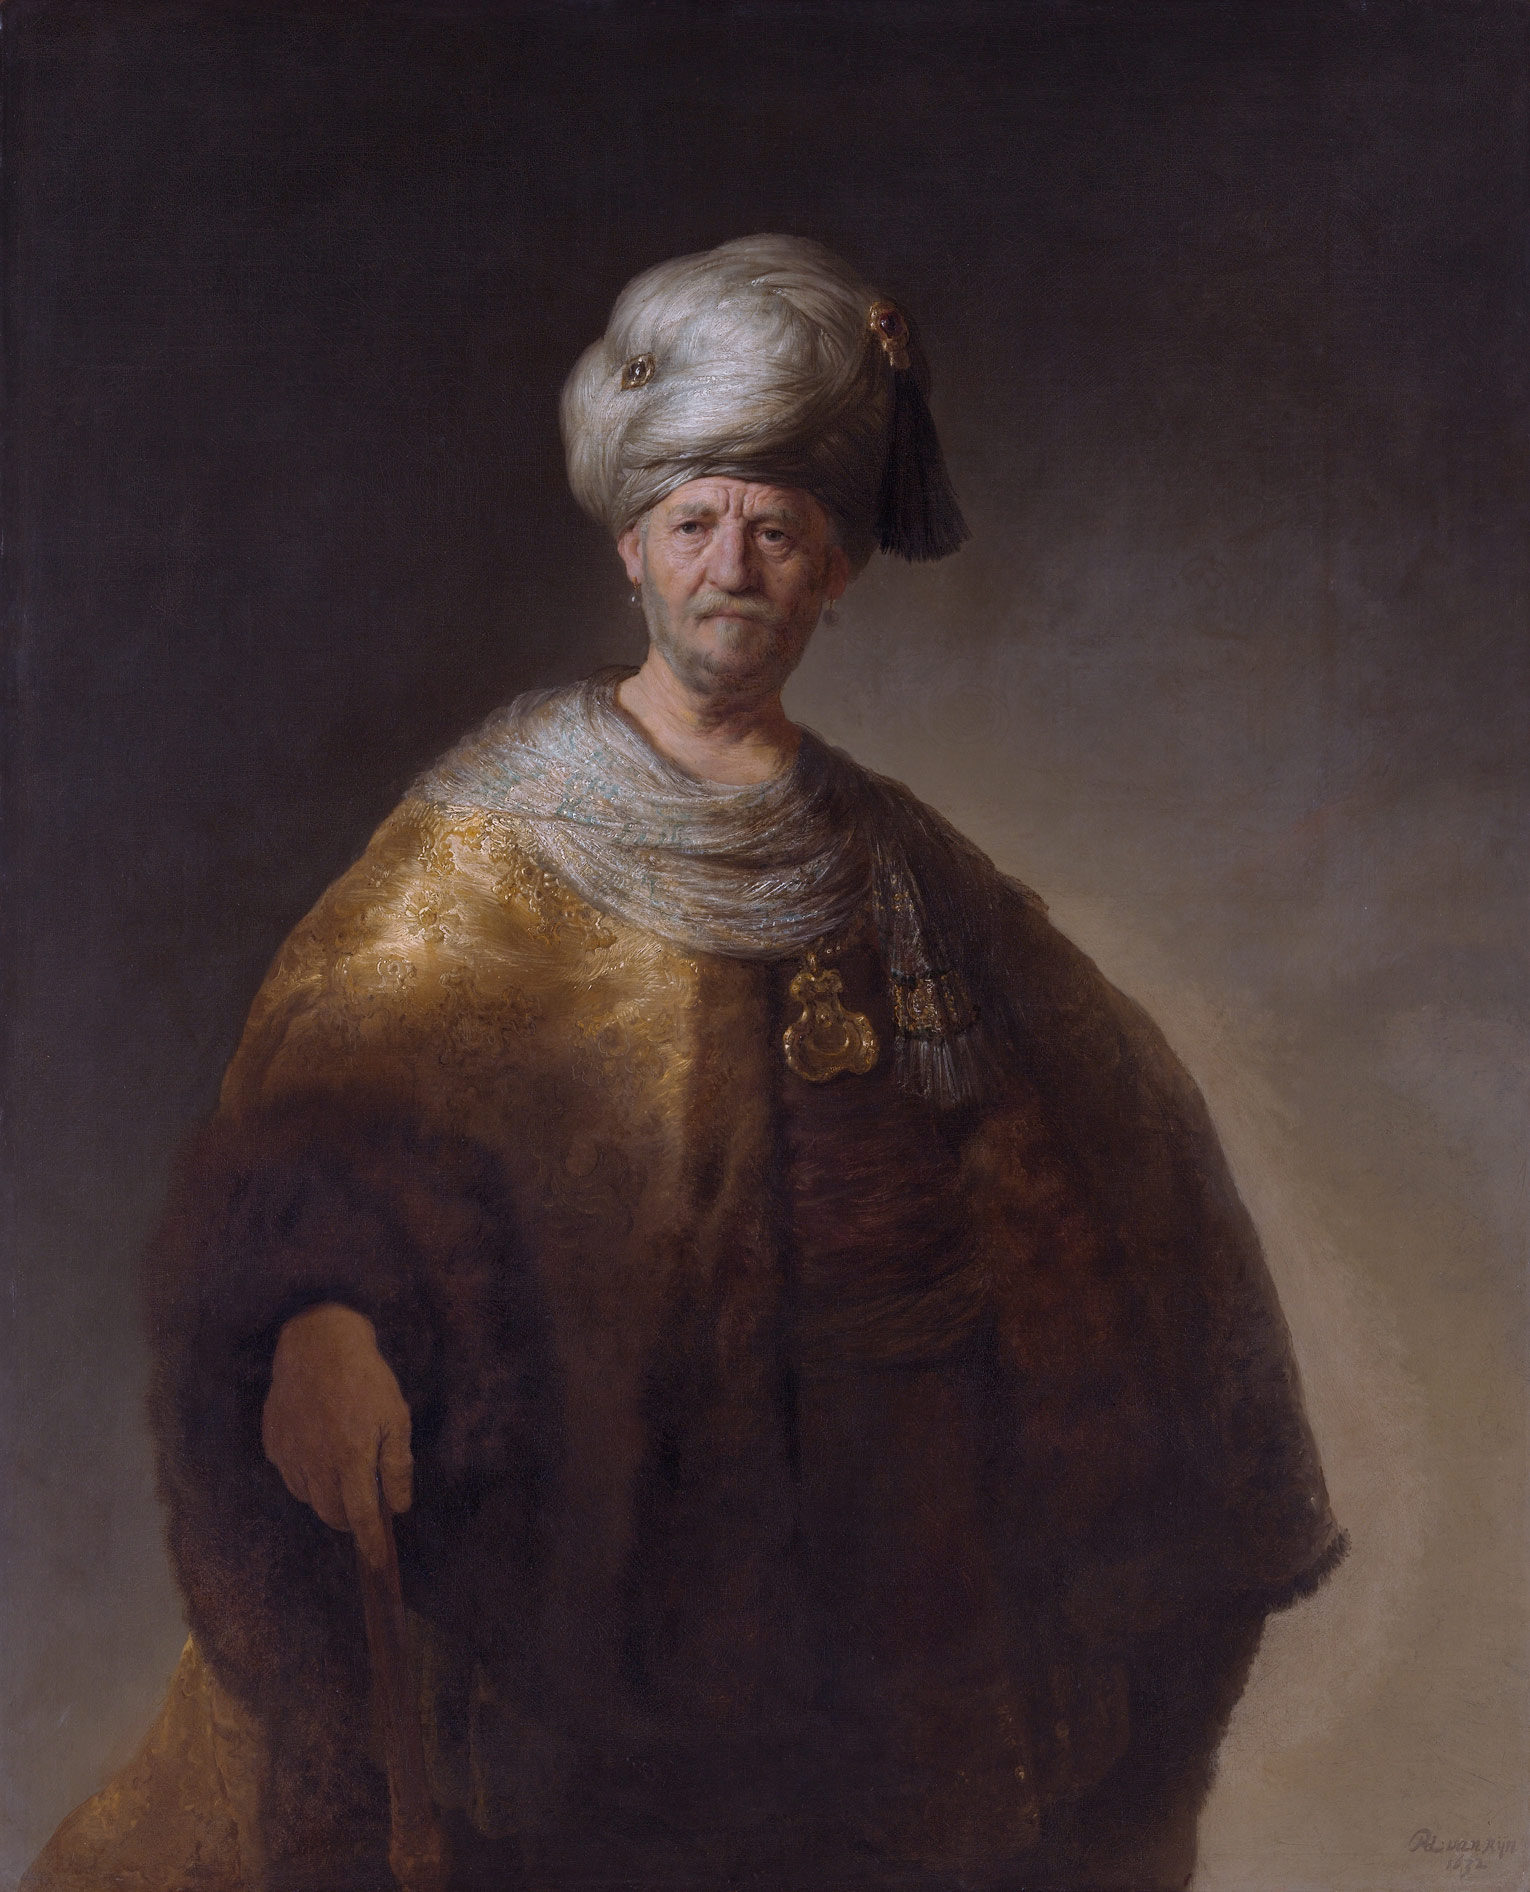 Rembrandt, Nobile orientale (1632; olio su tela, 152,5 x 124 cm; New York, Metropolitan Museum of Art)
